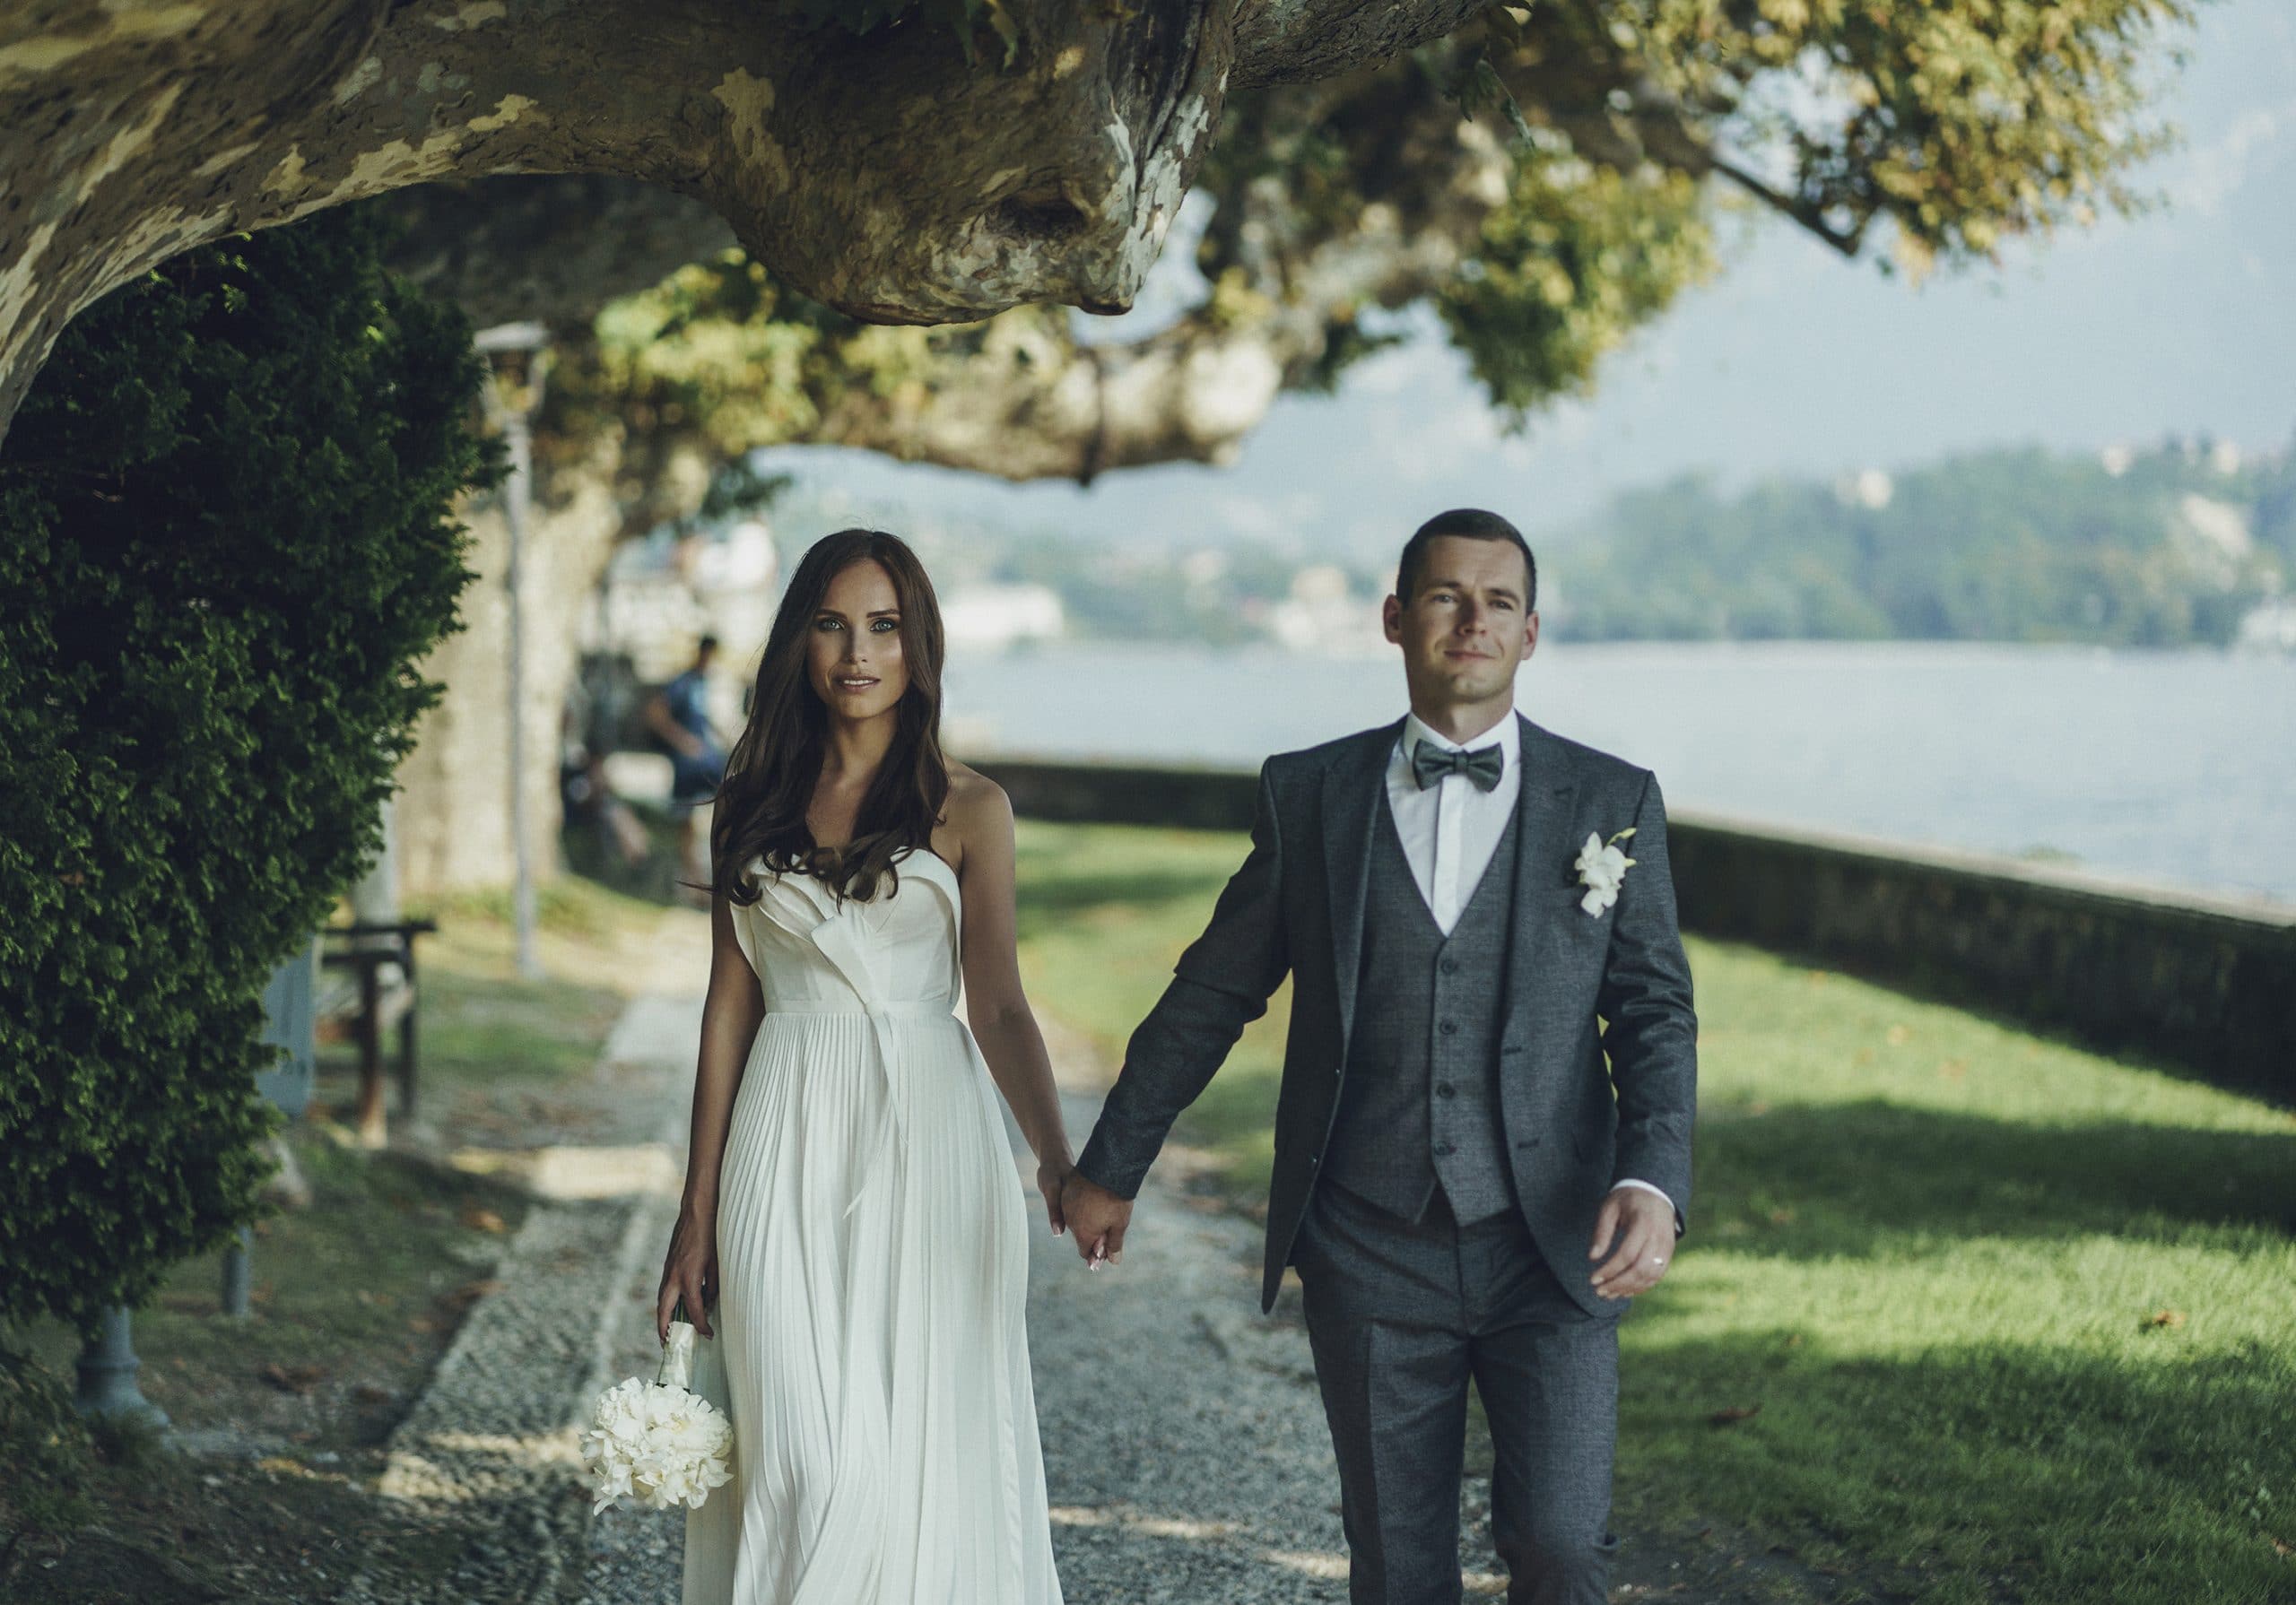 Vilma Wedding & Event Planner _ Vilma Rapšaitė _ vestuvės šiaurės Italijoje _ Komo ežero pakrantė _ jaunieji _ vestuvės dviems _ fotosesija parke _ vestuvių organizavimas 2022